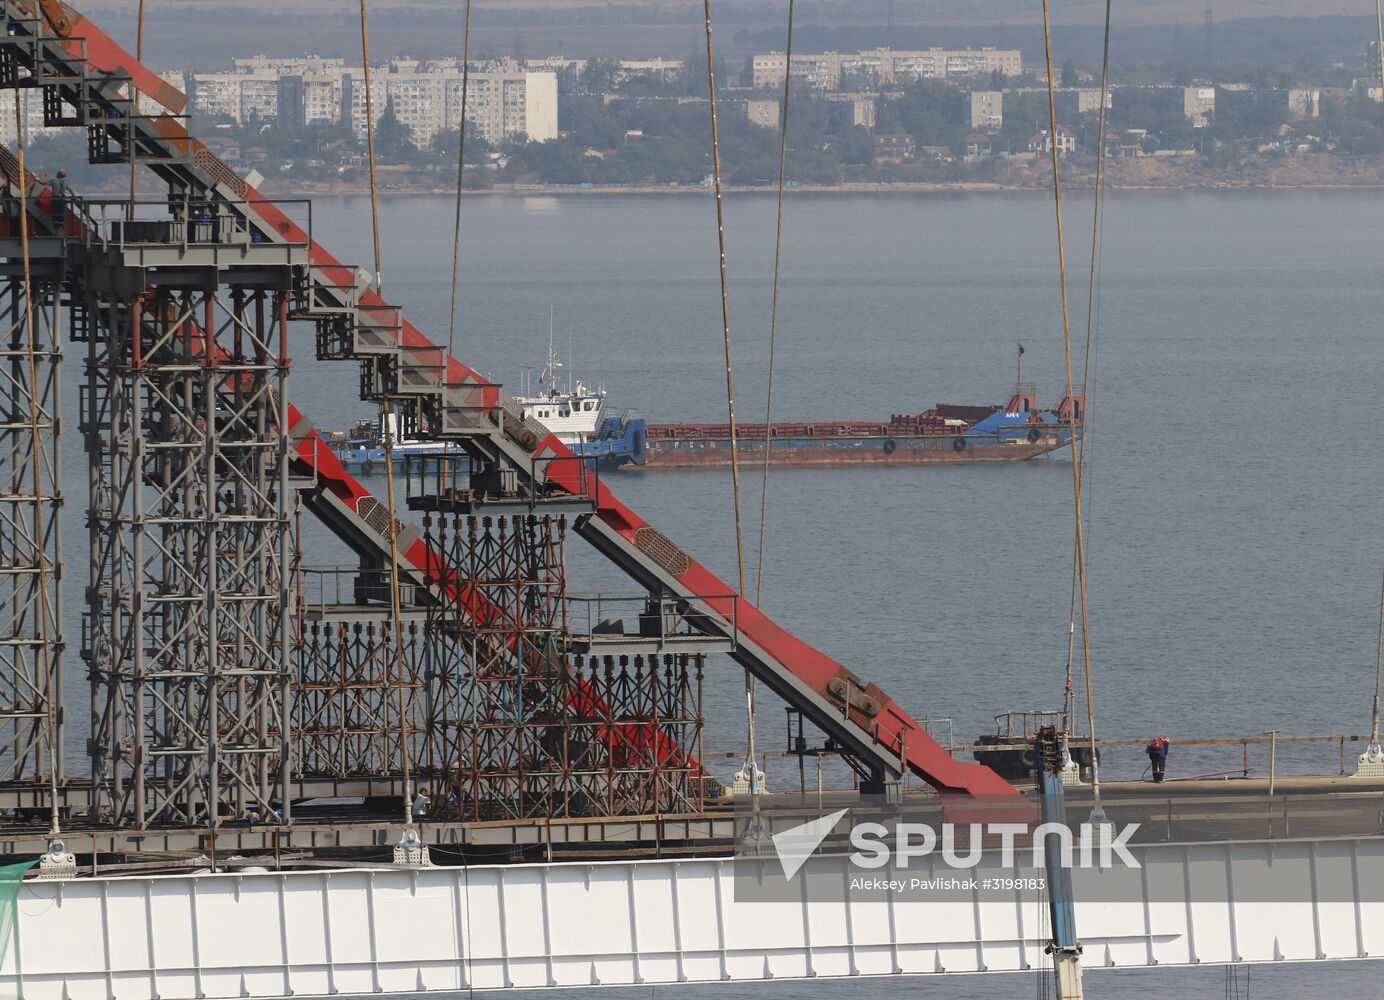 Construction of the Kerch Strait Bridge